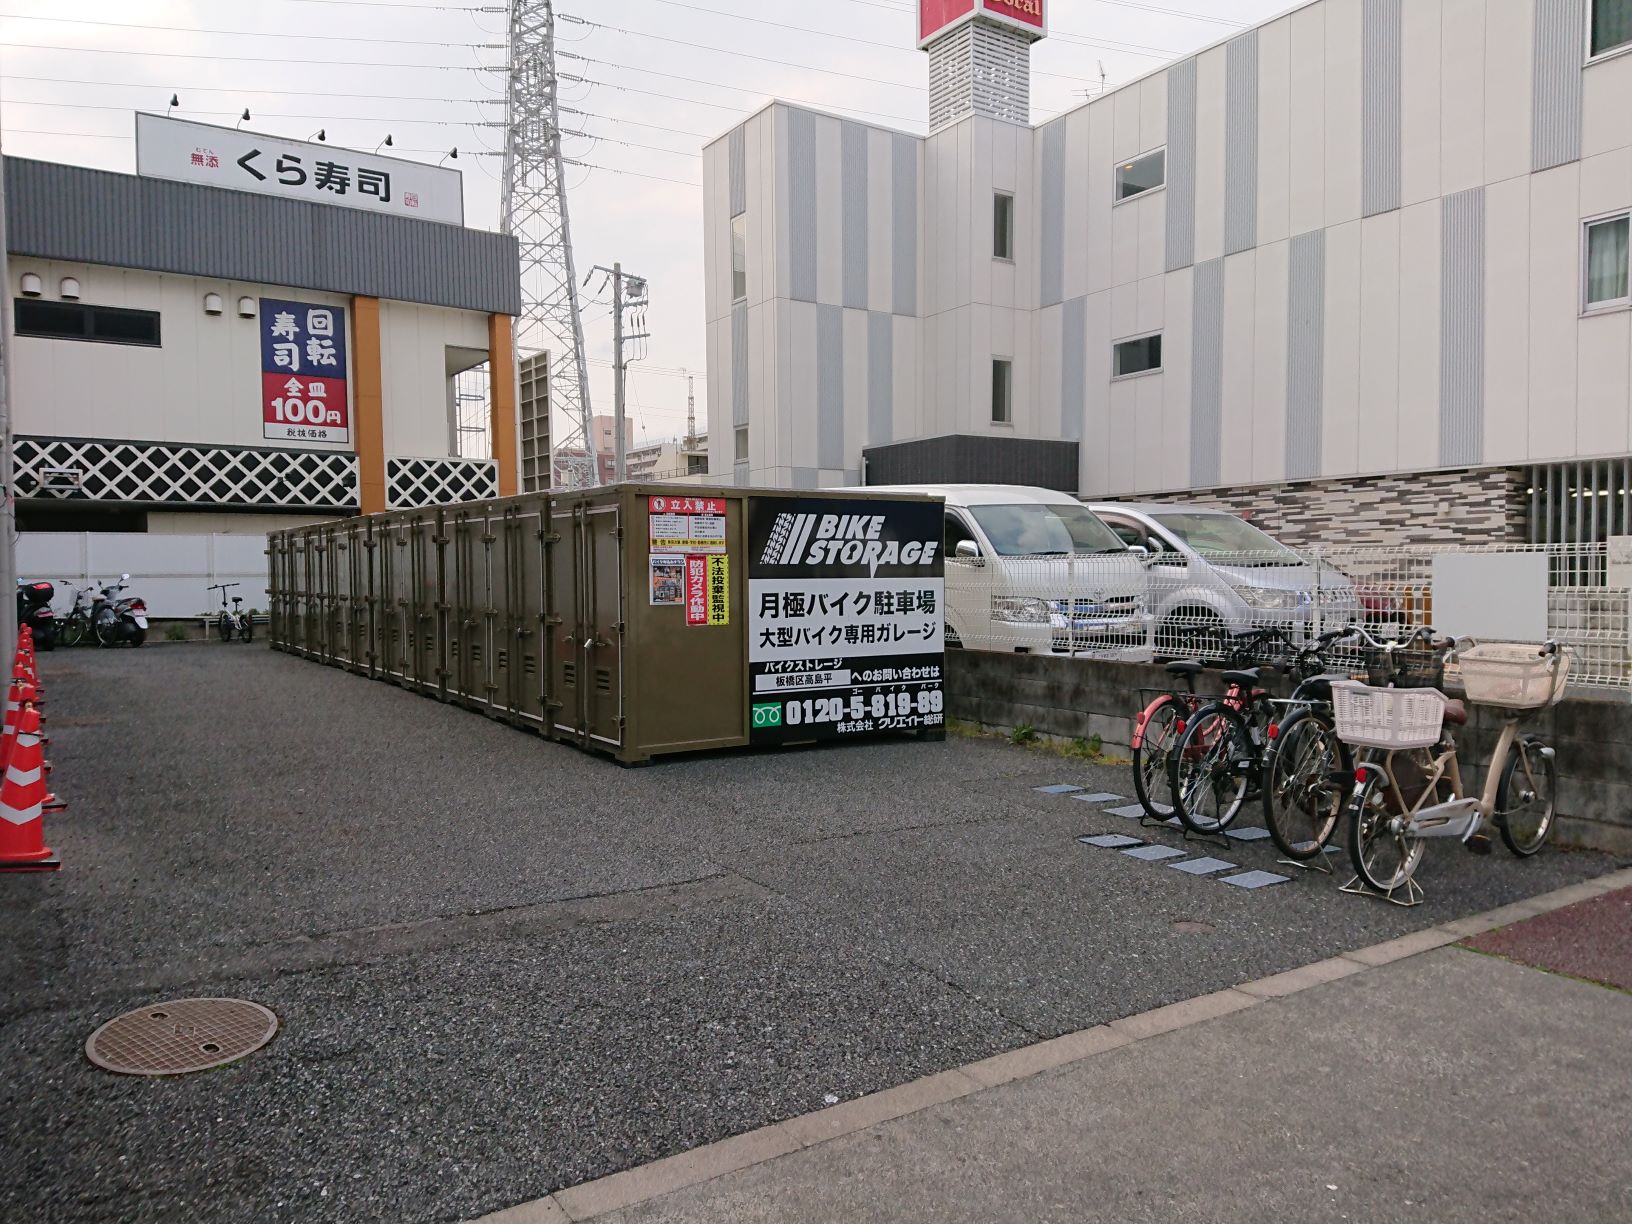 バイクストレージ板橋区高島平のバイク駐車場詳細 バイク駐車場をお探しの方にはユア バイクパーク